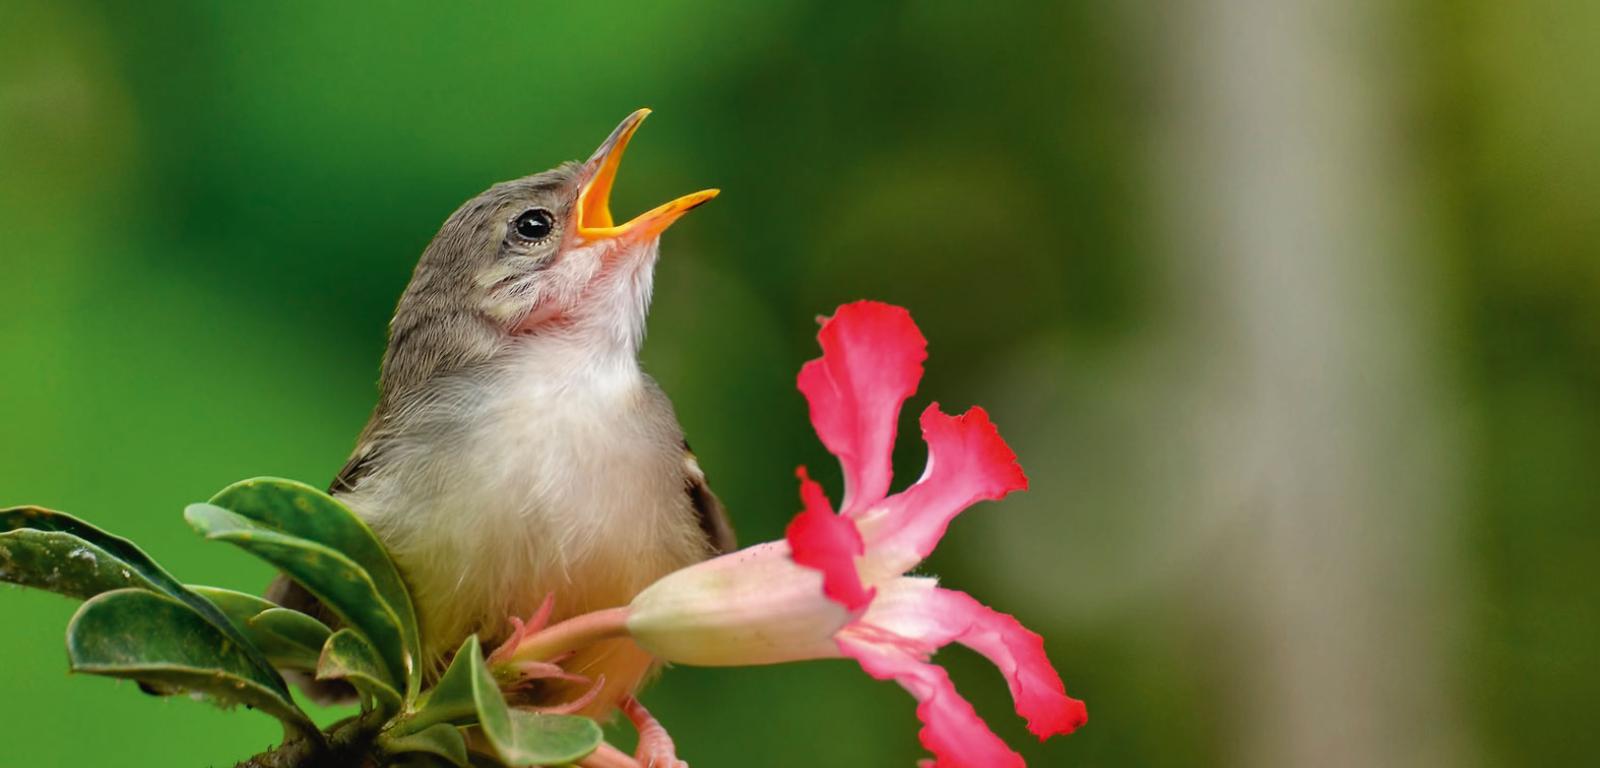 Ptaki śpiewające prawdopodobnie wyewoluowały 50 mln lat temu.